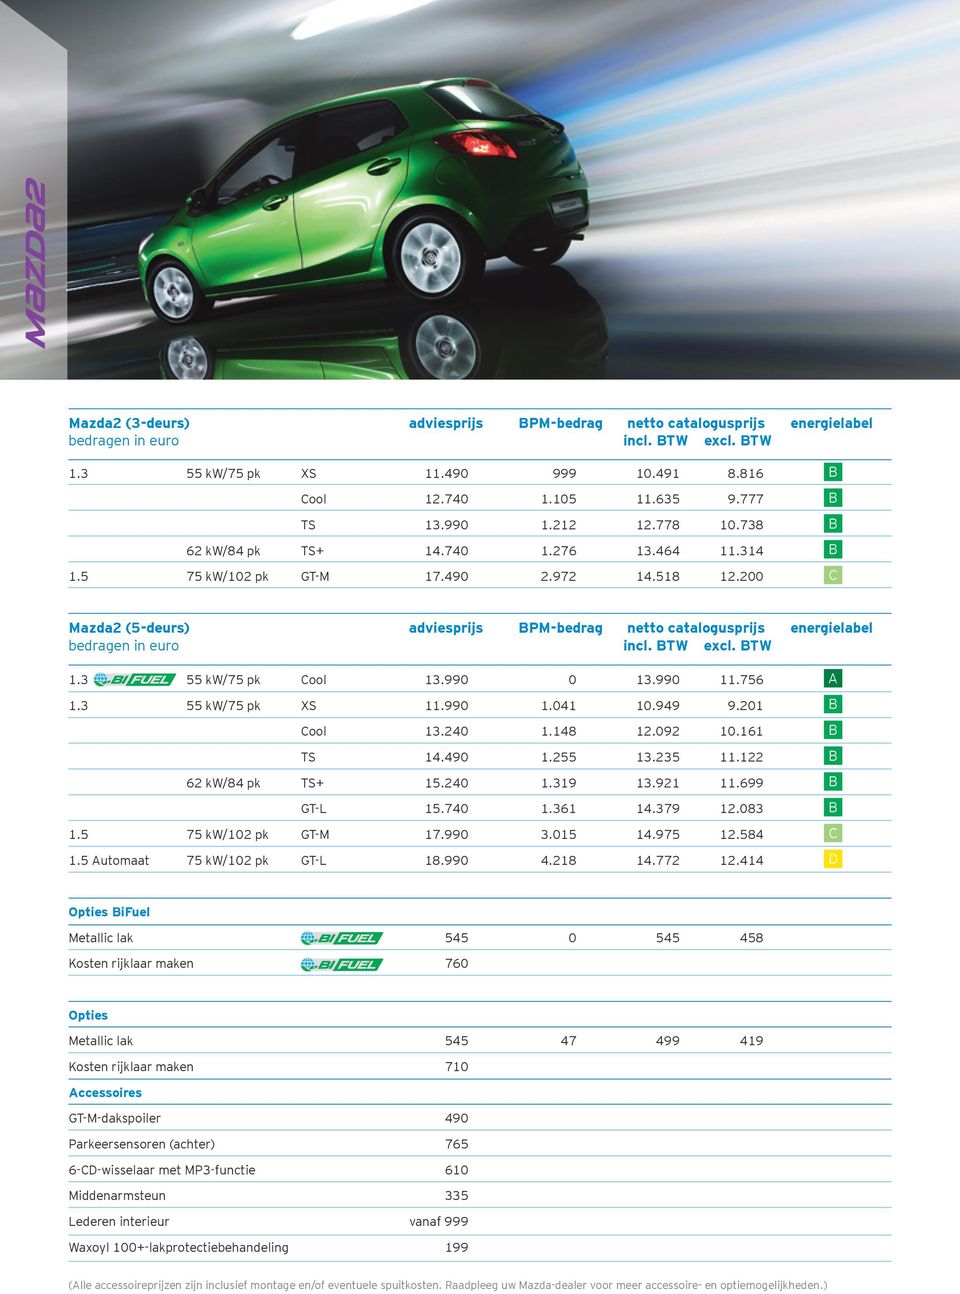 200 C Mazda2 (5-deurs) adviesprijs BPM-bedrag netto catalogusprijs energielabel bedragen in euro incl. BTW excl. BTW 1.3 55 kw/75 pk Cool 13.990 0 13.990 11.756 A 1.3 55 kw/75 pk XS 11.990 1.041 10.